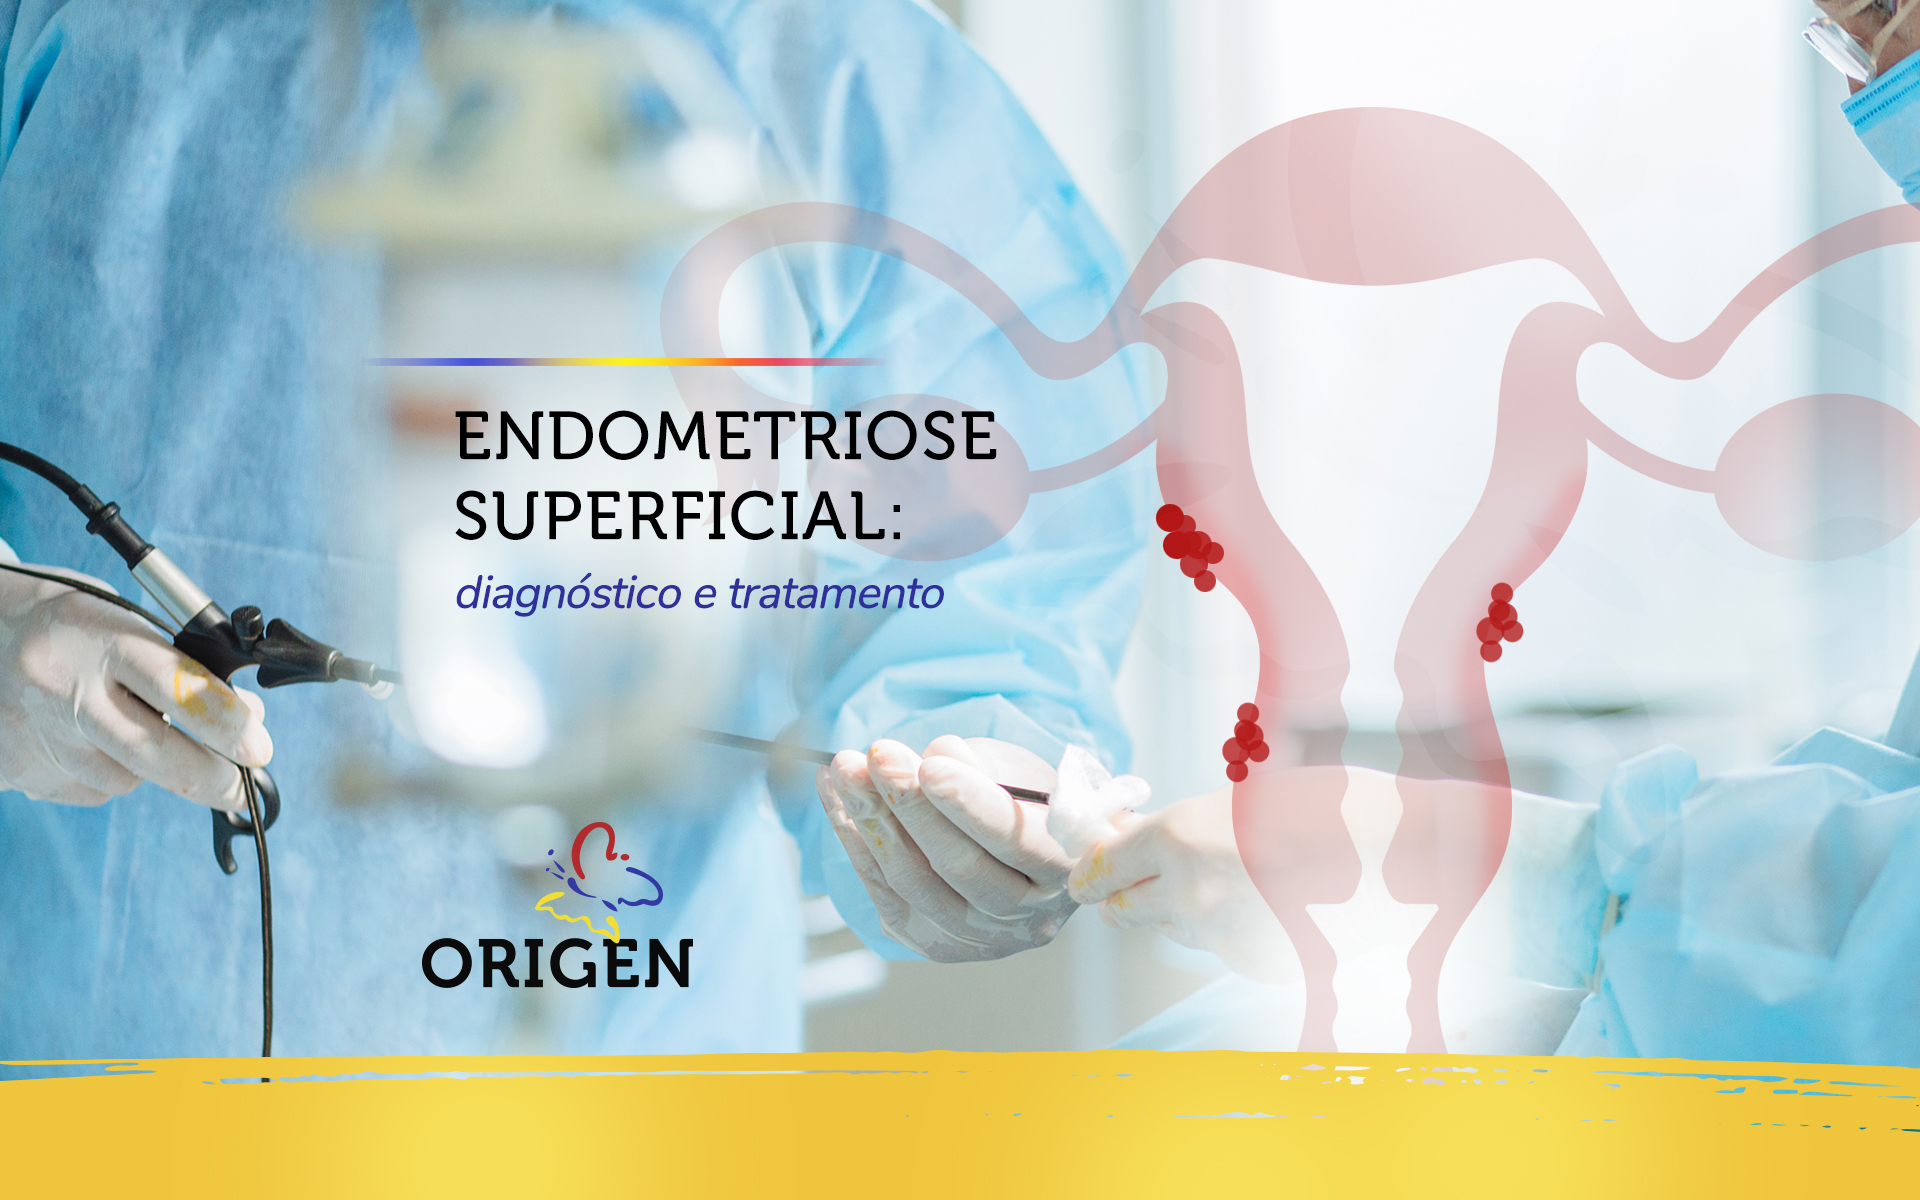 Endometriose superficial: diagnóstico e tratamento